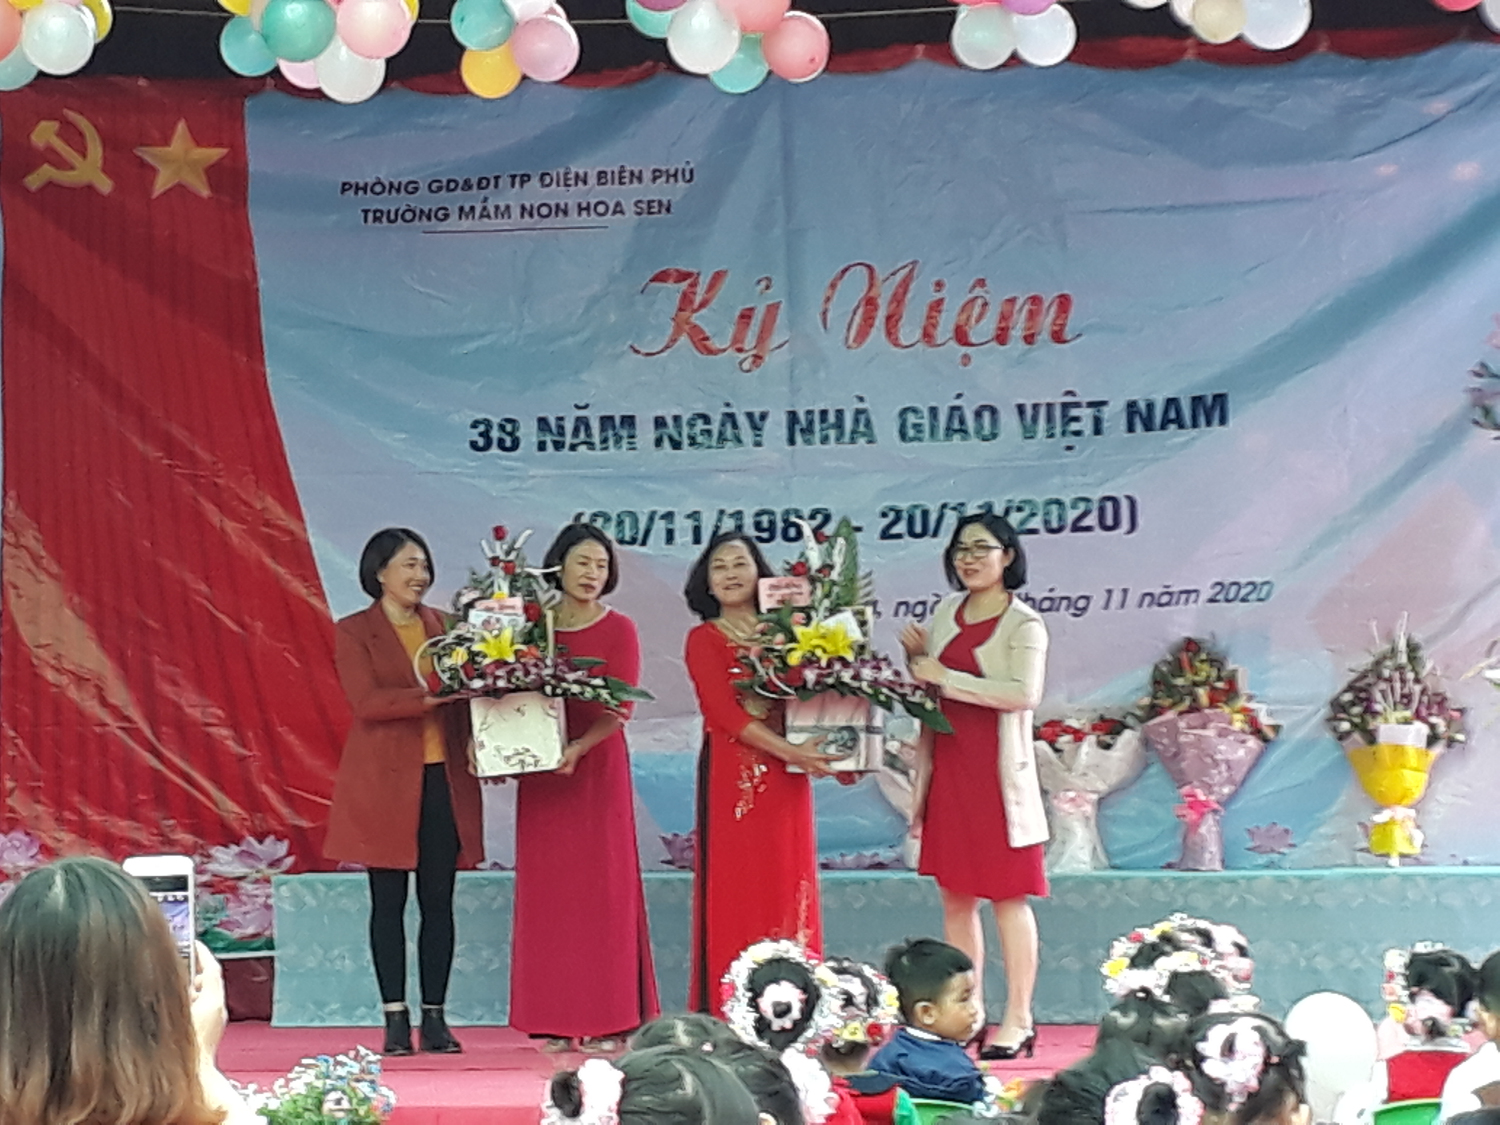 Trường mầm non Hoa Sen  kỷ niệm 38 năm ngày nhà giáo Việt Nam  (20/11/1982 – 20/11/2020)